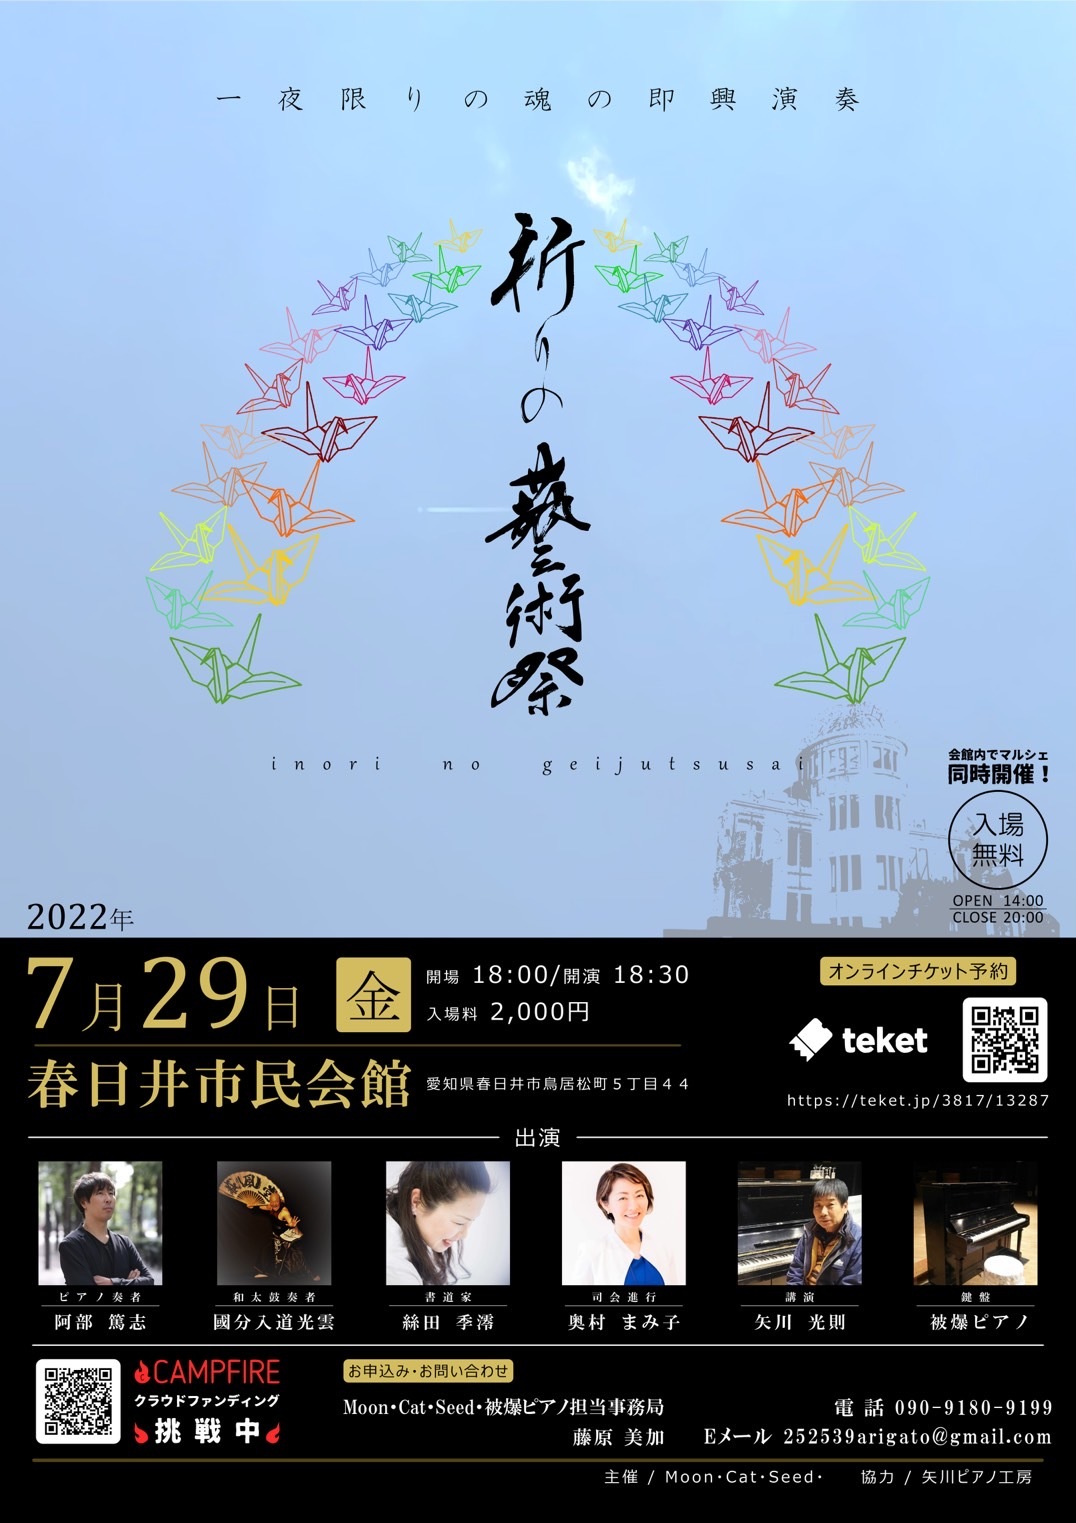 「和太鼓」×「被爆ピアノ」×「書道」の一夜限りの
即興演奏イベント「祈りの藝術祭」を7/29に開催！